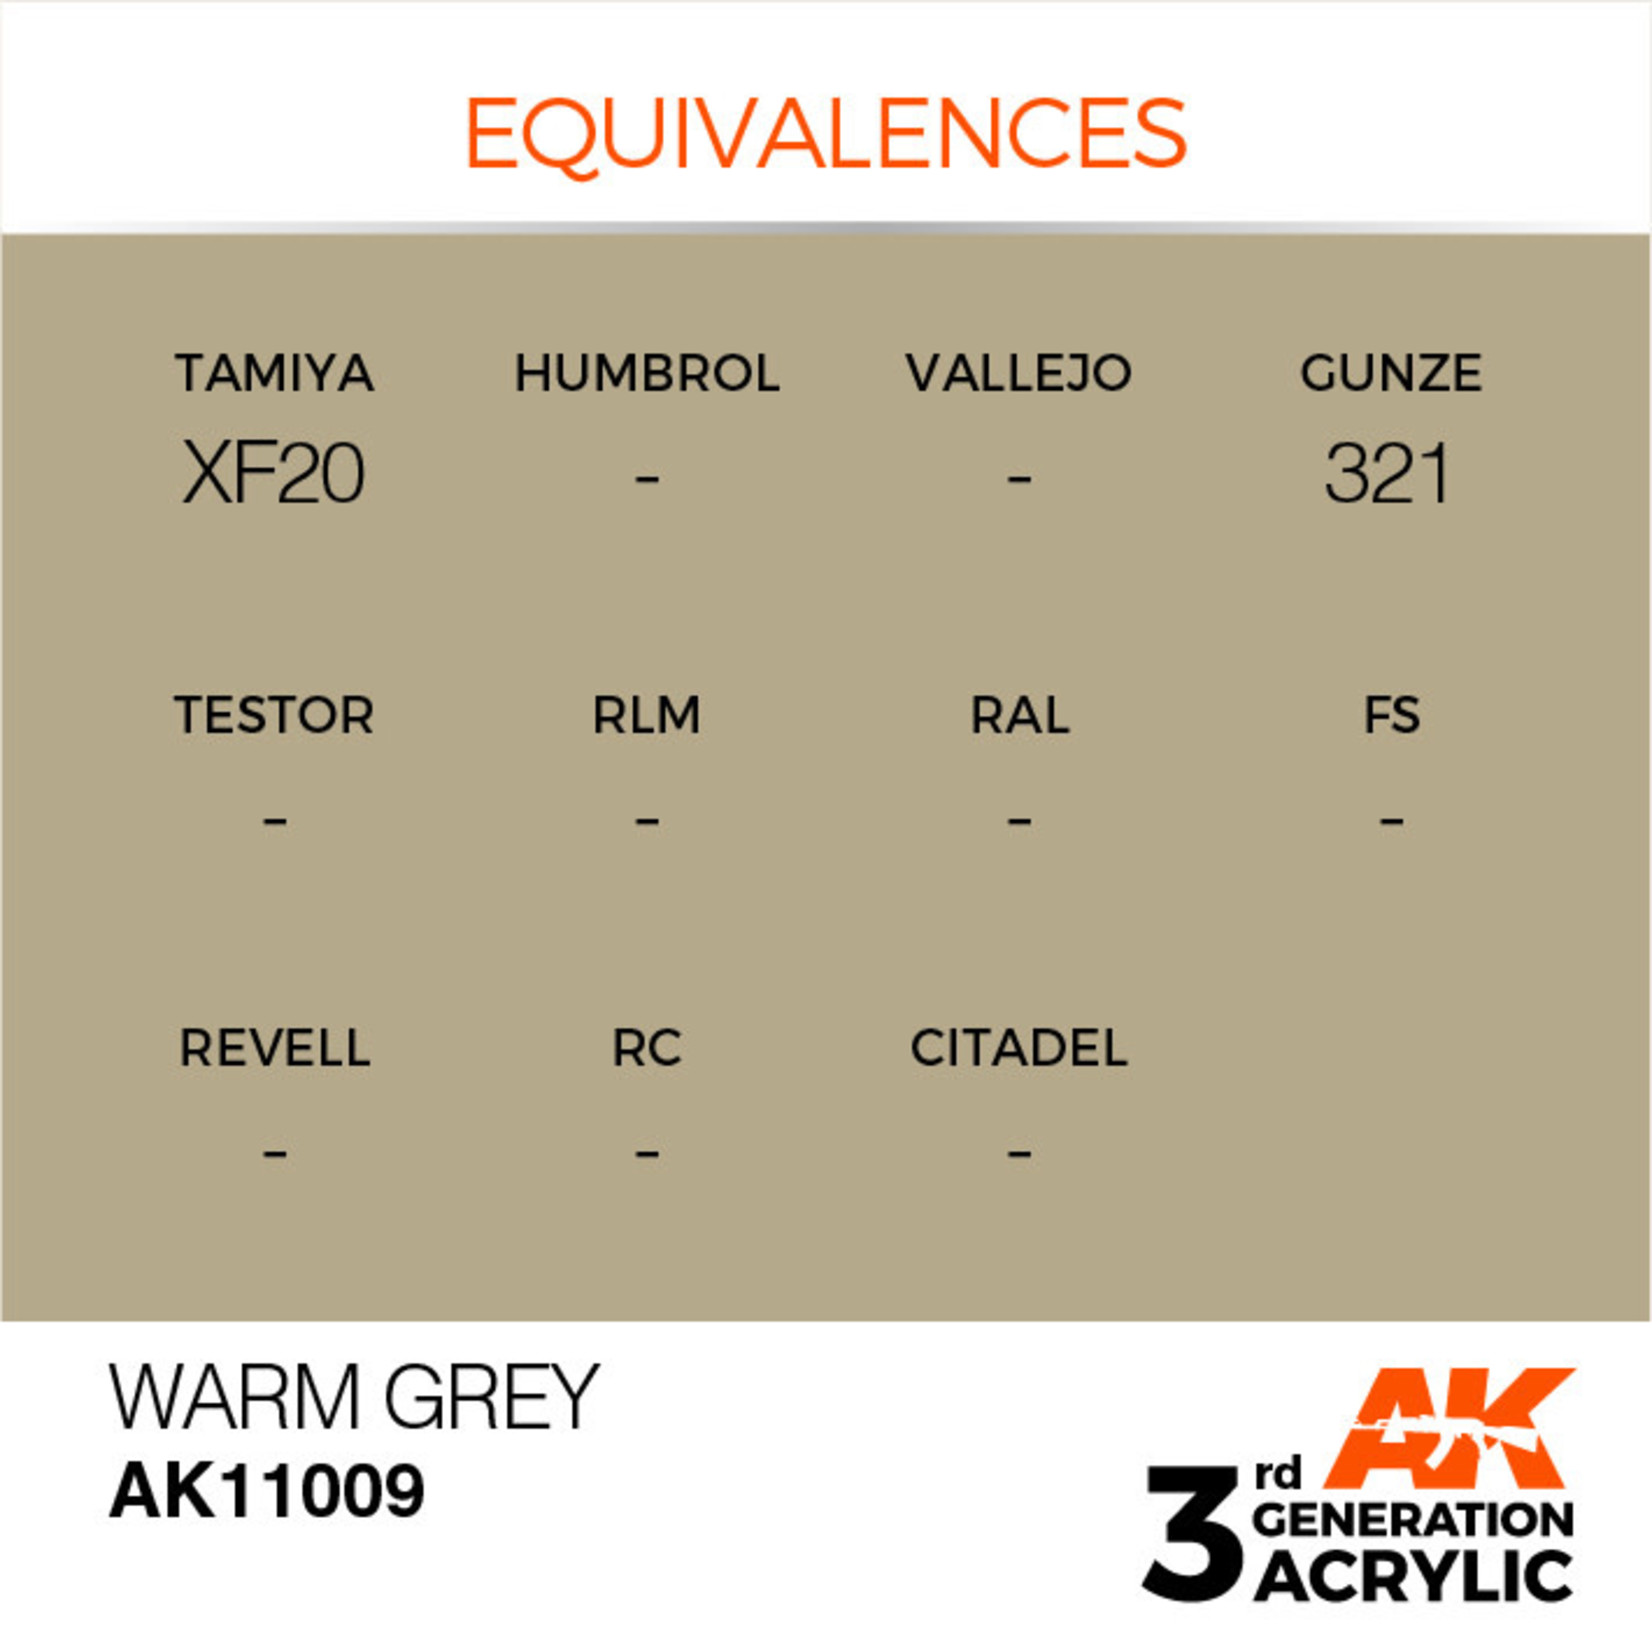 AK Interactive AK11009 3G Acrylic Warm Grey 17ml